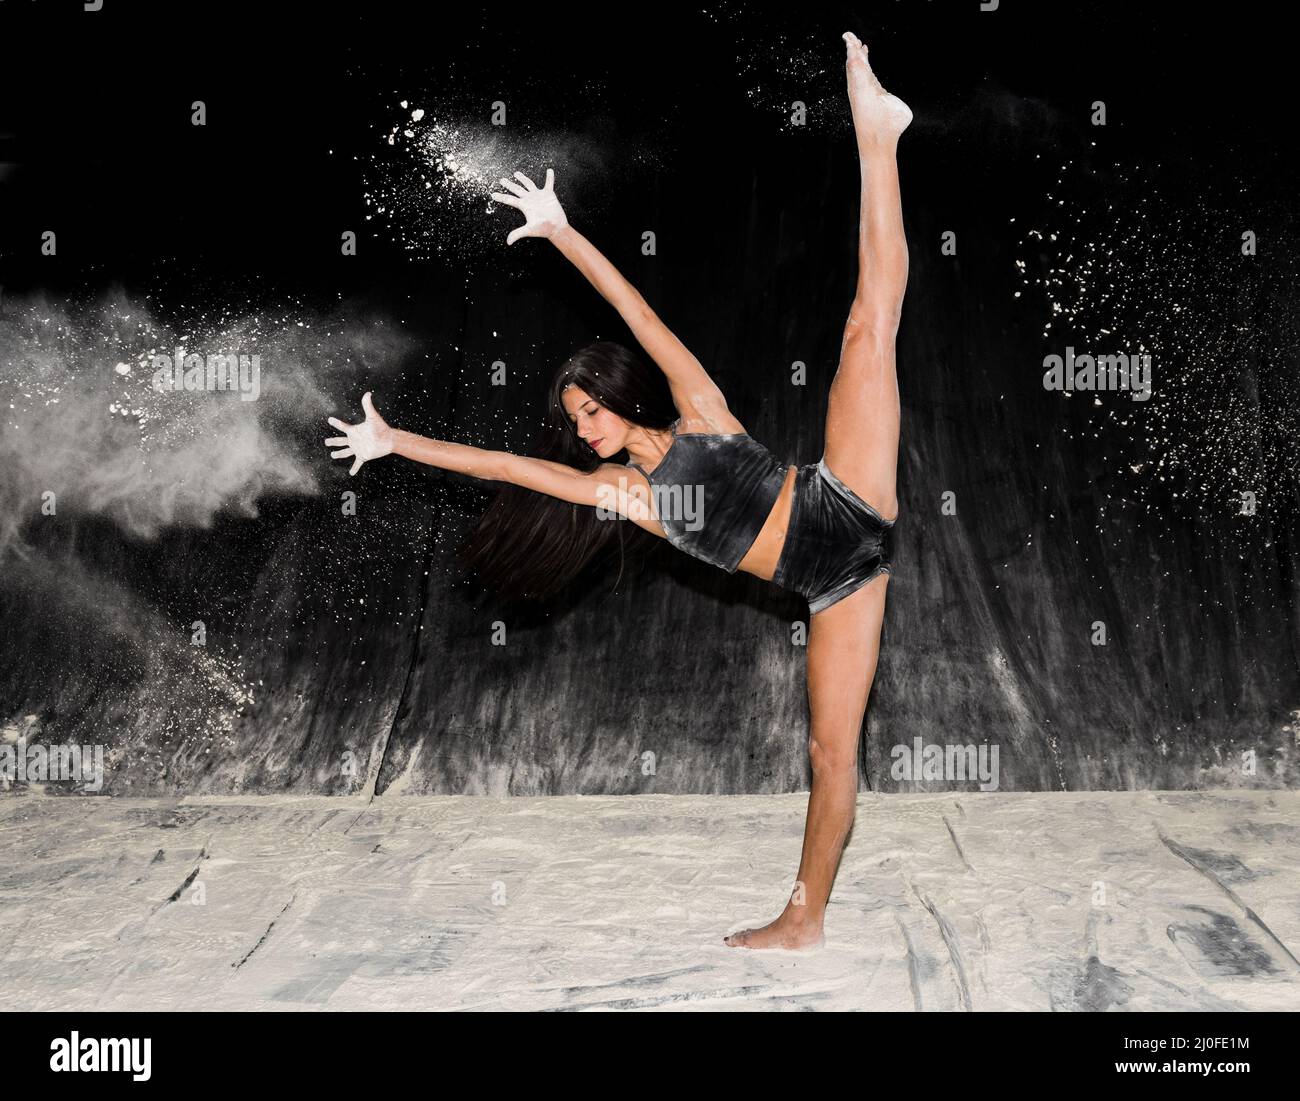 Danseuse de ballet contemporaine dansant sur la scène avec de la farine Banque D'Images